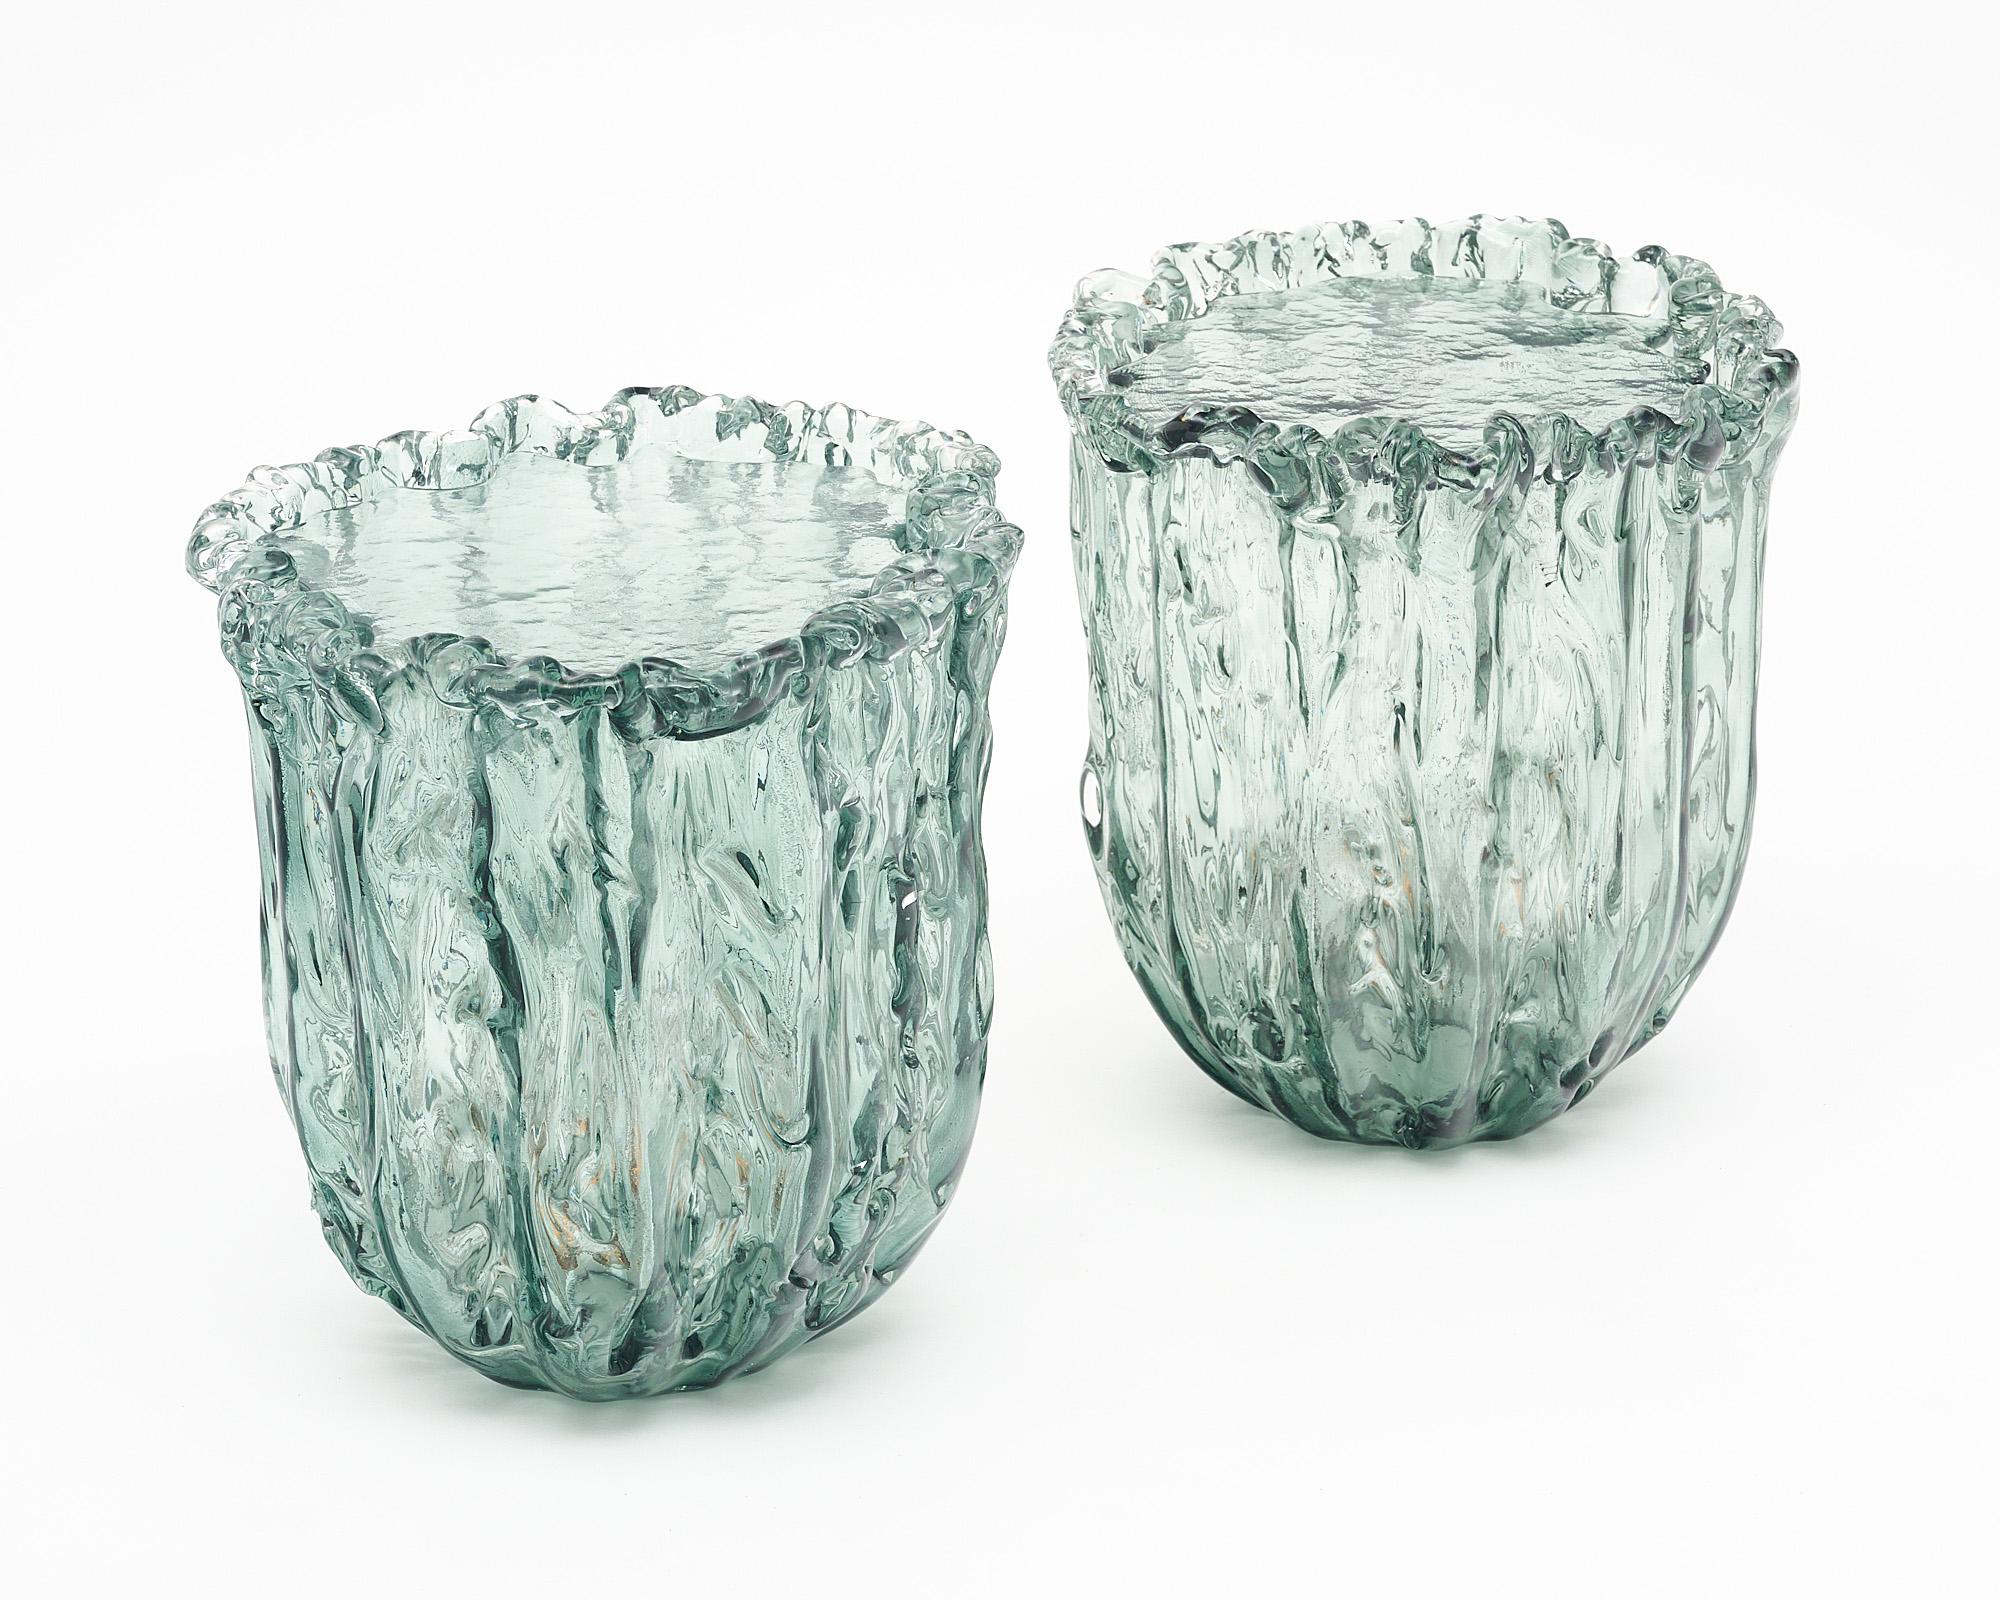 Paire de tables d'appoint en verre de Naoto Fukasawa créées à Murano, en Italie. Les tables sont soufflées à la main et ont une forme organique. Un couvercle en verre séparé s'insère parfaitement dans la partie supérieure. Ils sont électrifiés à